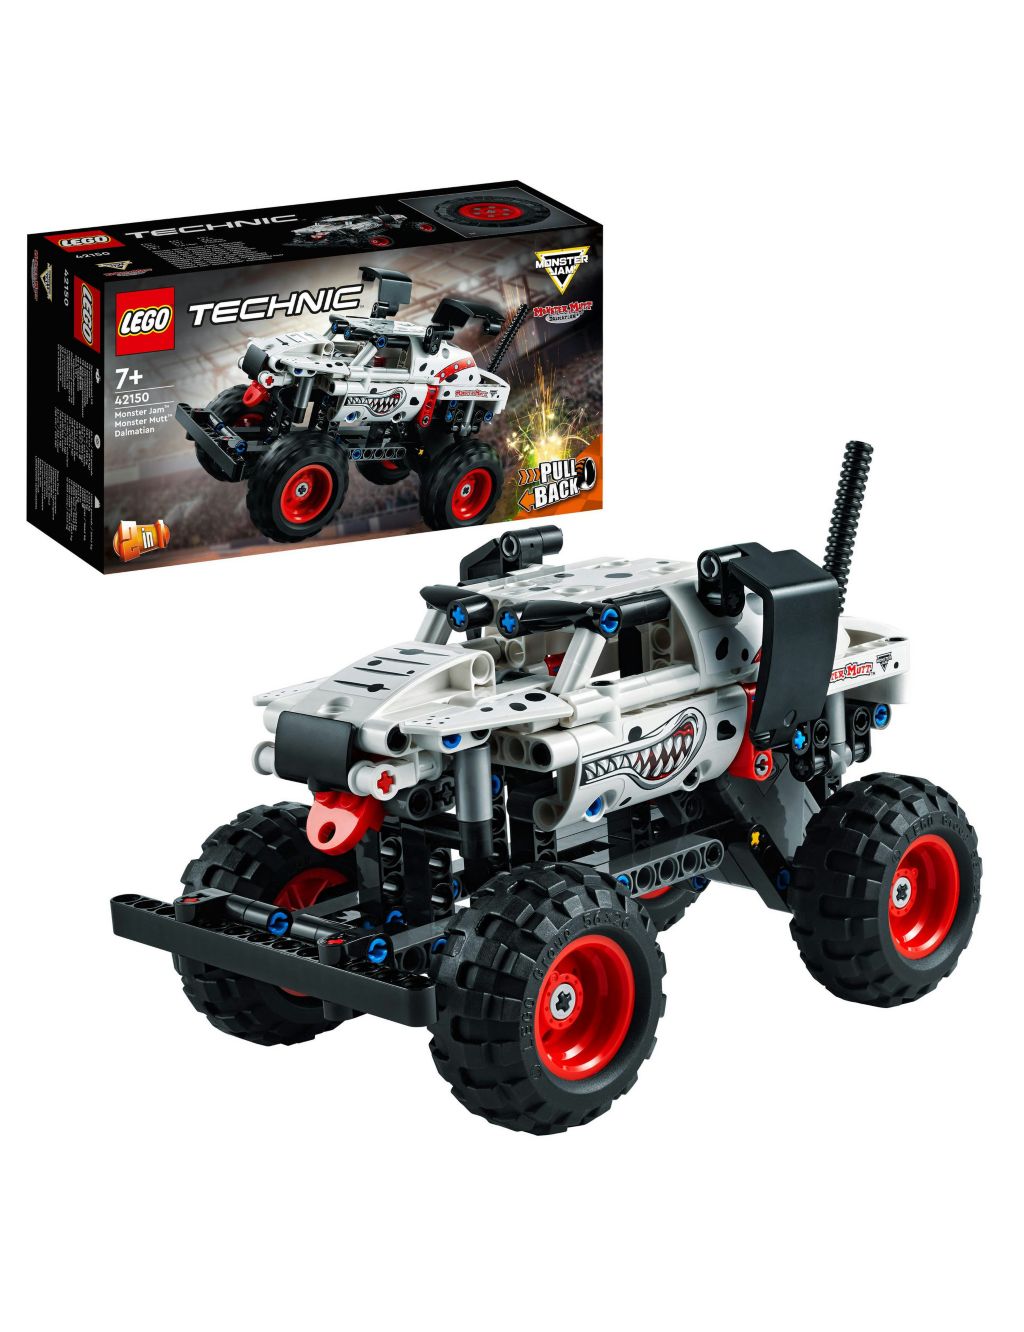 LEGO Technic Monster Jam Monster Mutt Dalmatian 42150 (7+ Yrs)